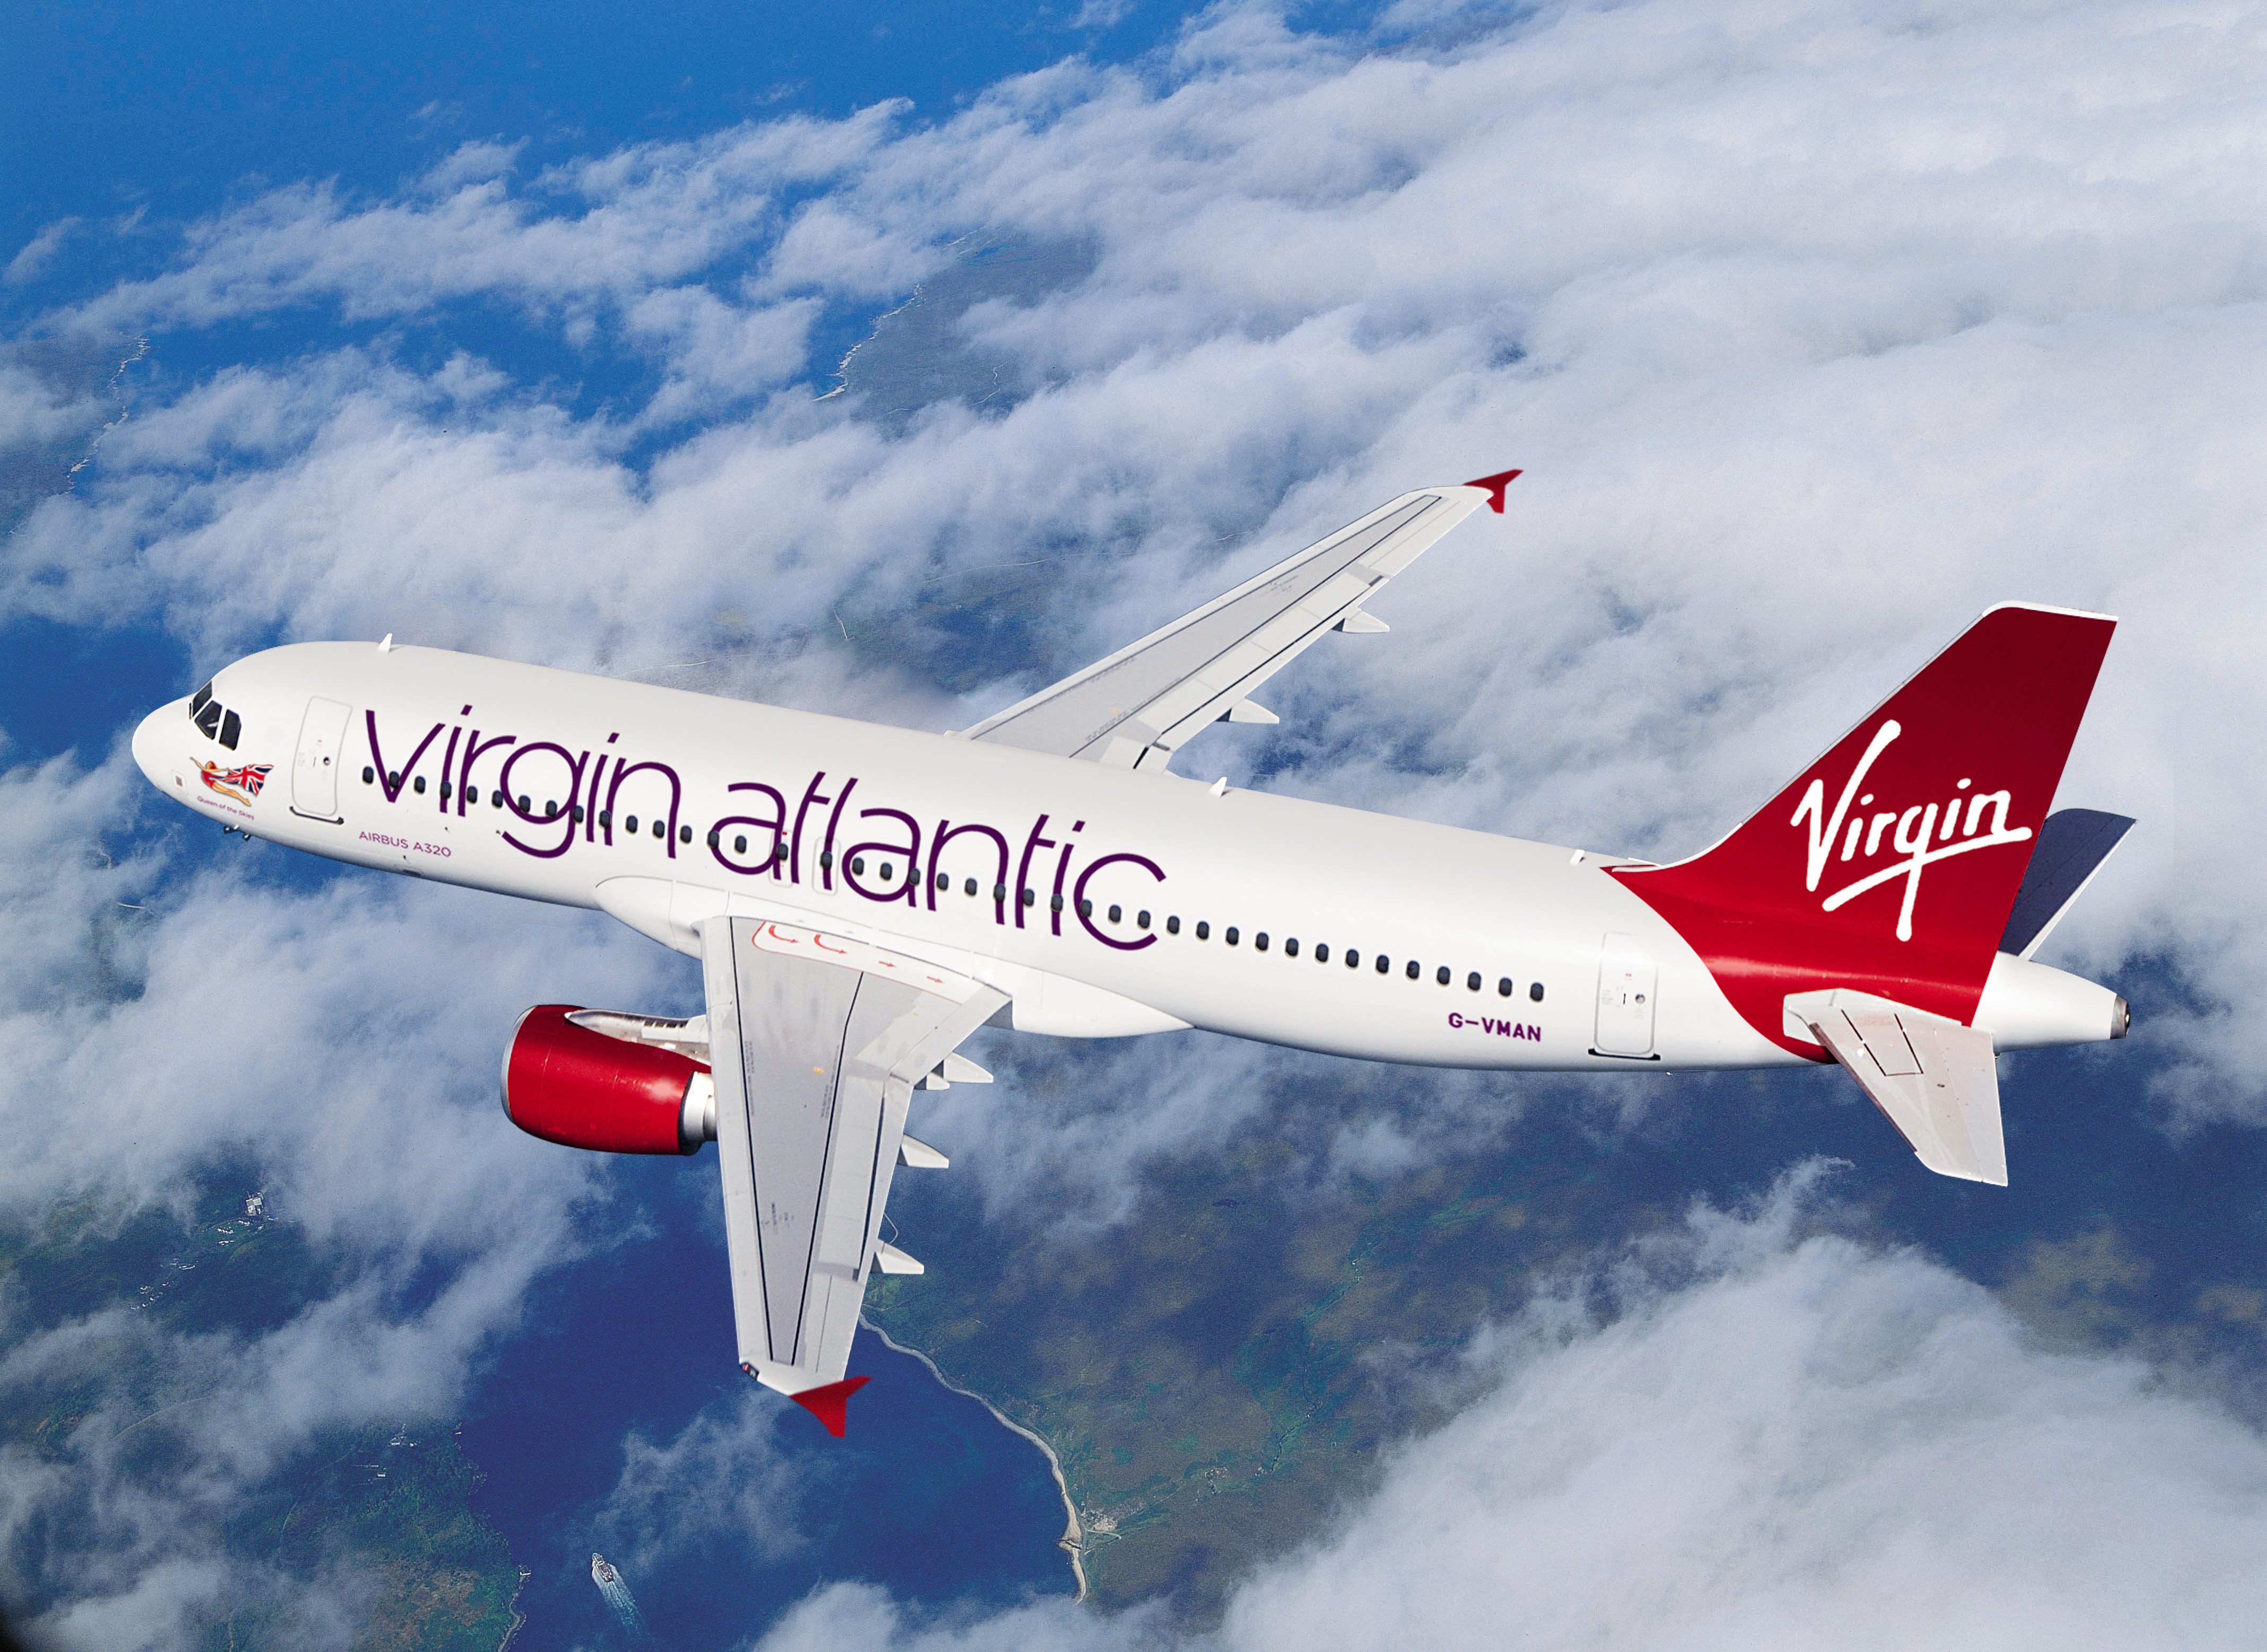 orlando atlantic virgin flights